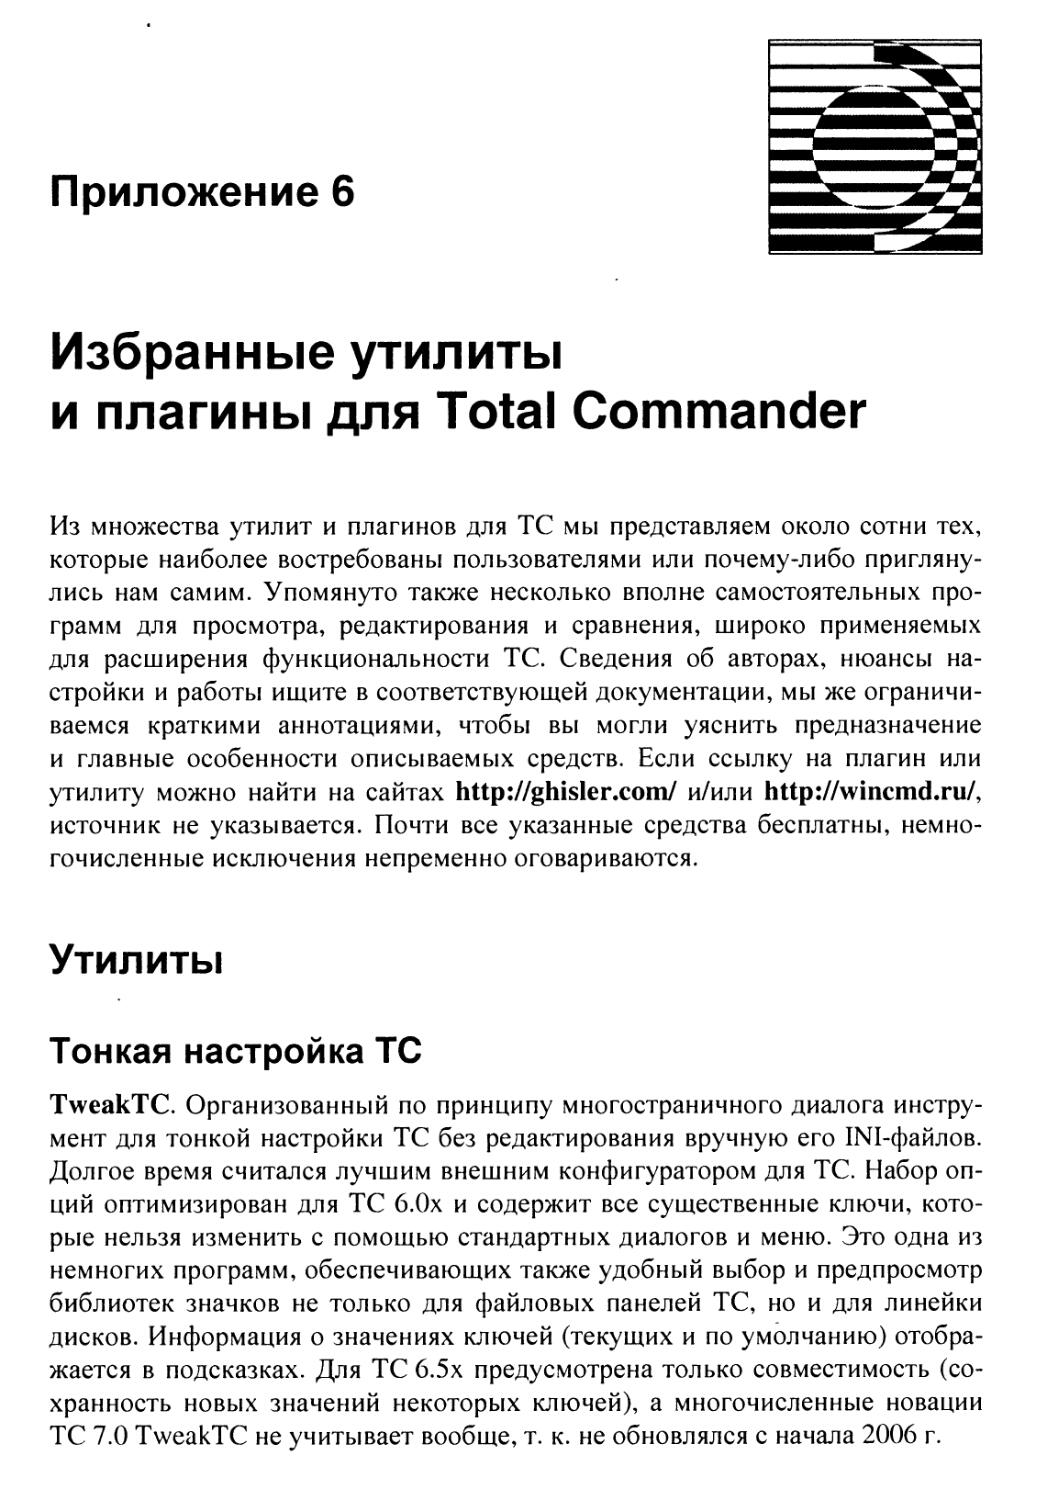 Приложение 6. Избранные утилиты и плагины для Total Commander